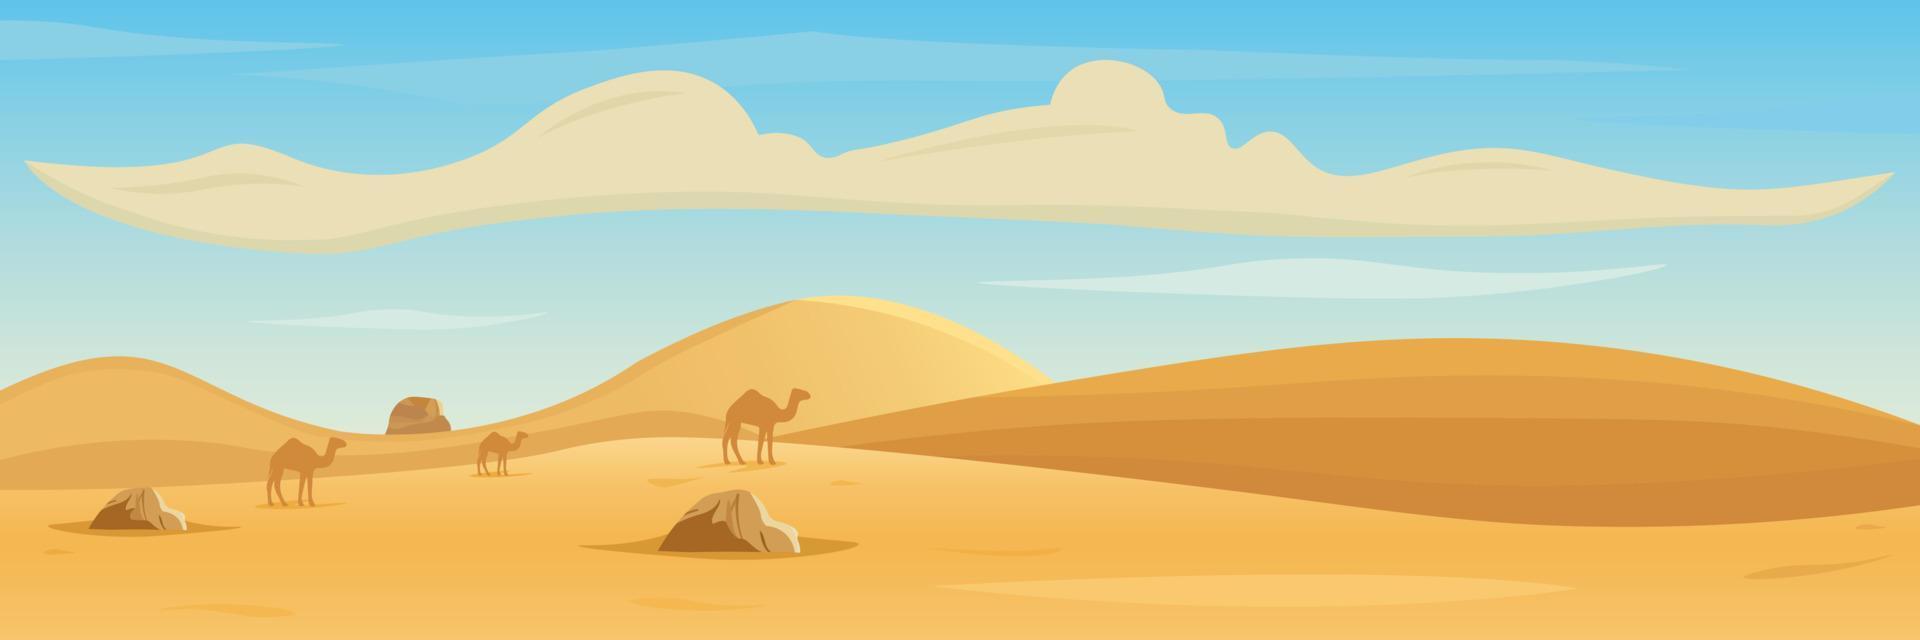 heuvels, bergen en kamelen silhouetten tegen woestijn landschap achtergrond. in tekenfilm stijl. vector illustratie